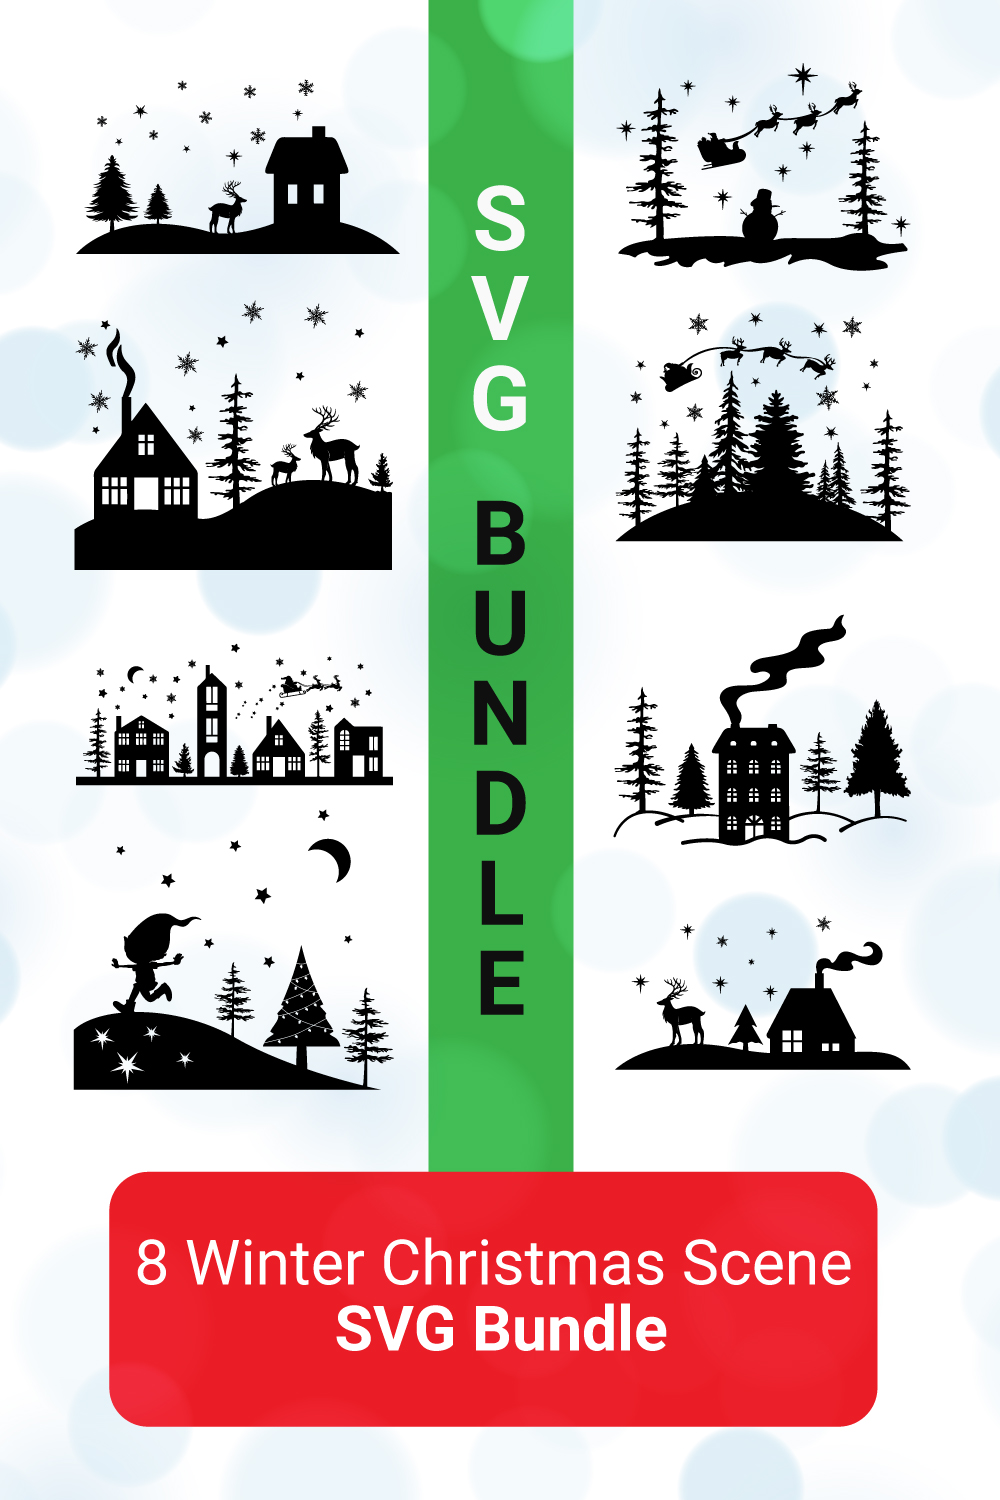 Festive Christmas SVG Design Bundle, Enchanting Winter Landscape SVG Bundle with Santa and Reindeer pinterest preview image.